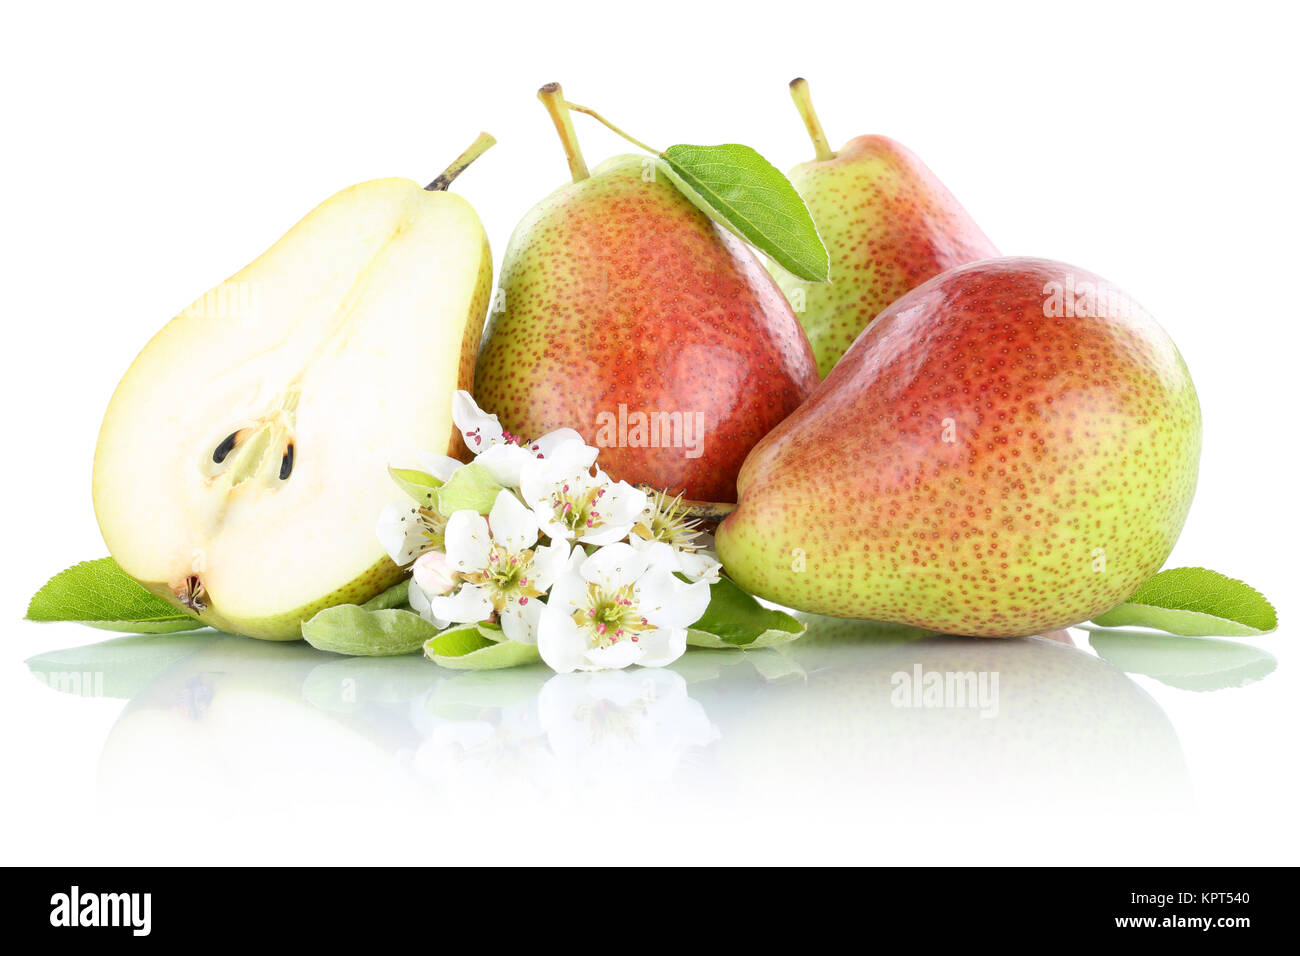 Birnen Birne geschnitten frische Früchte Obst Freisteller freigestellt isoliert vor einem weissen Hintergrund Stock Photo